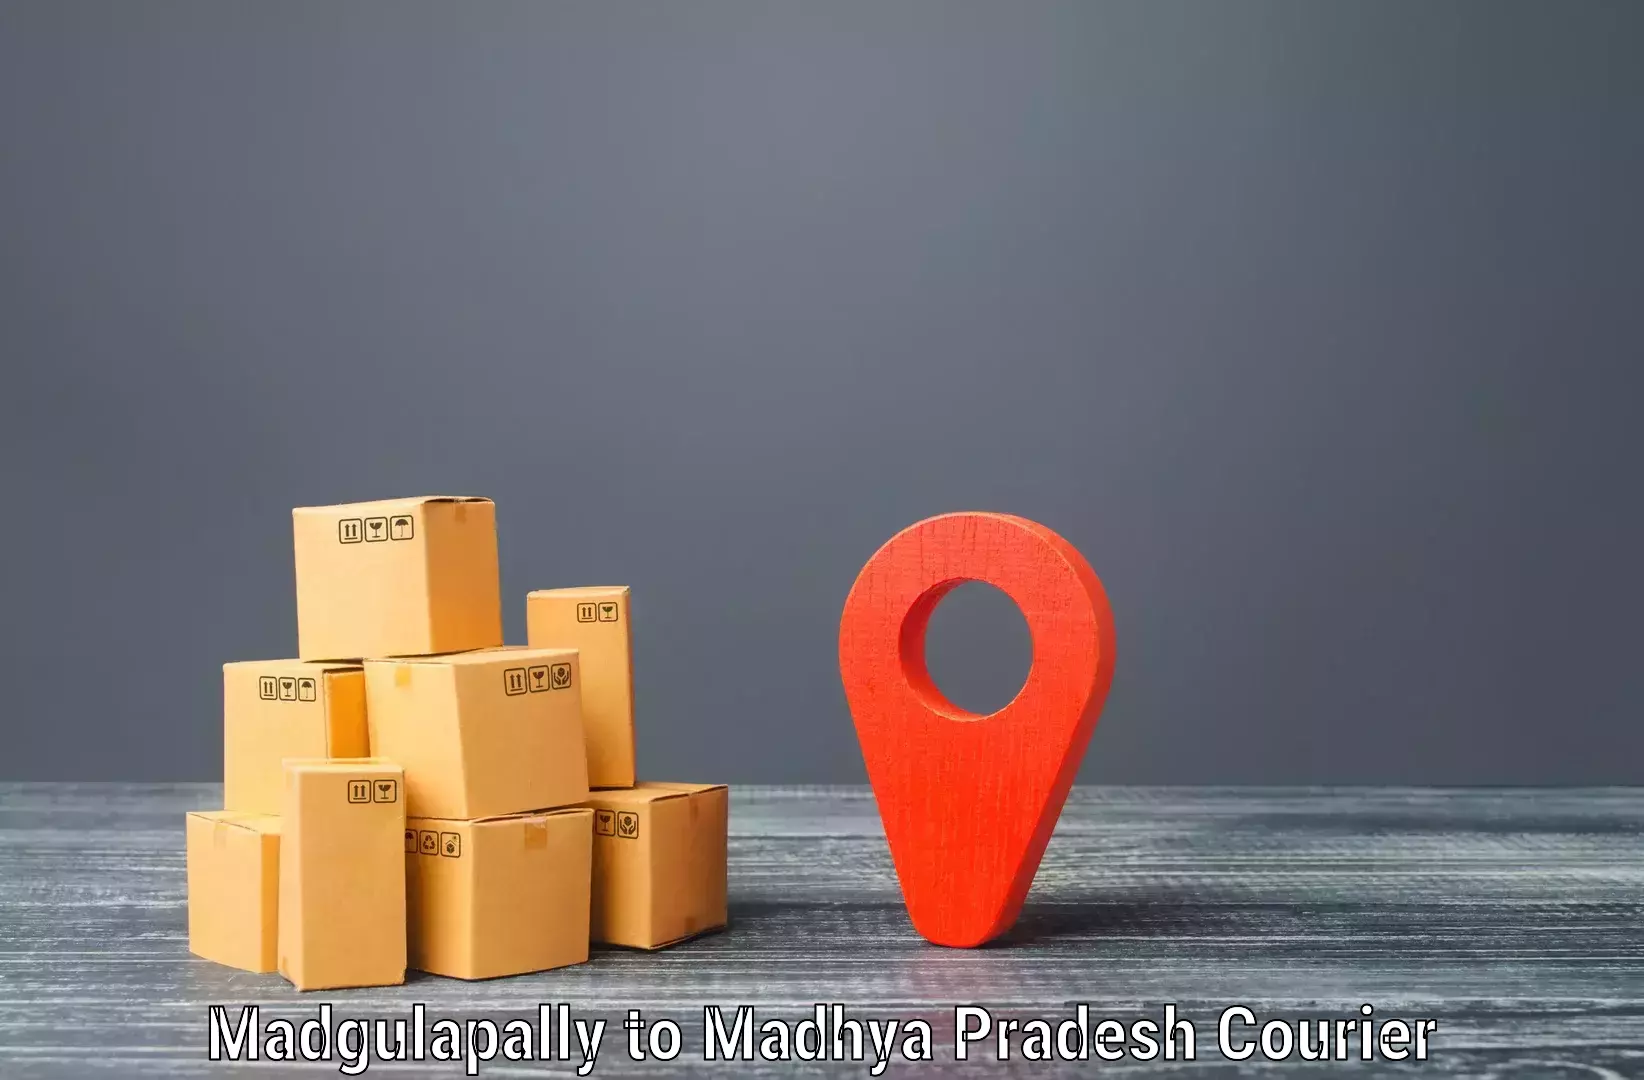 Regular parcel service Madgulapally to Niwari